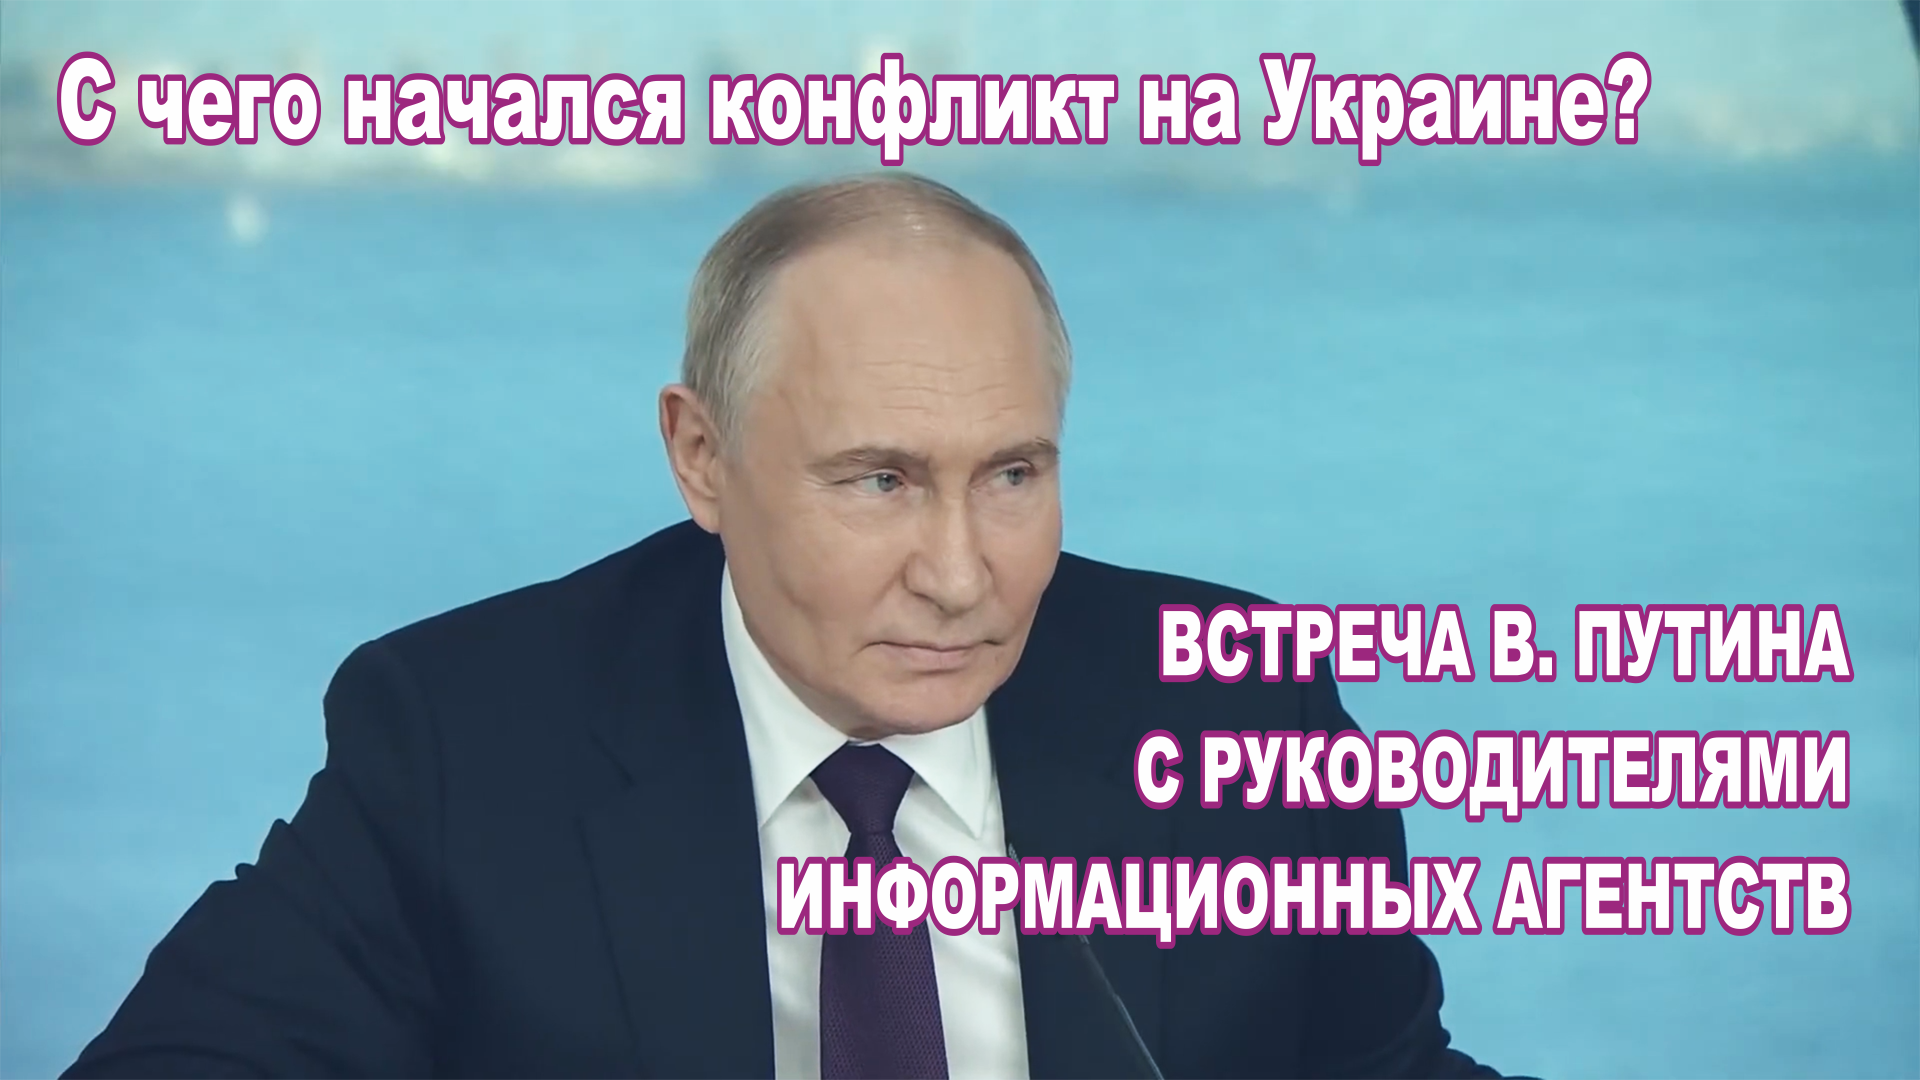 Встреча В. Путина  руководителями информационных агентств 5 июня 2024 года. Конфликт на Украине.